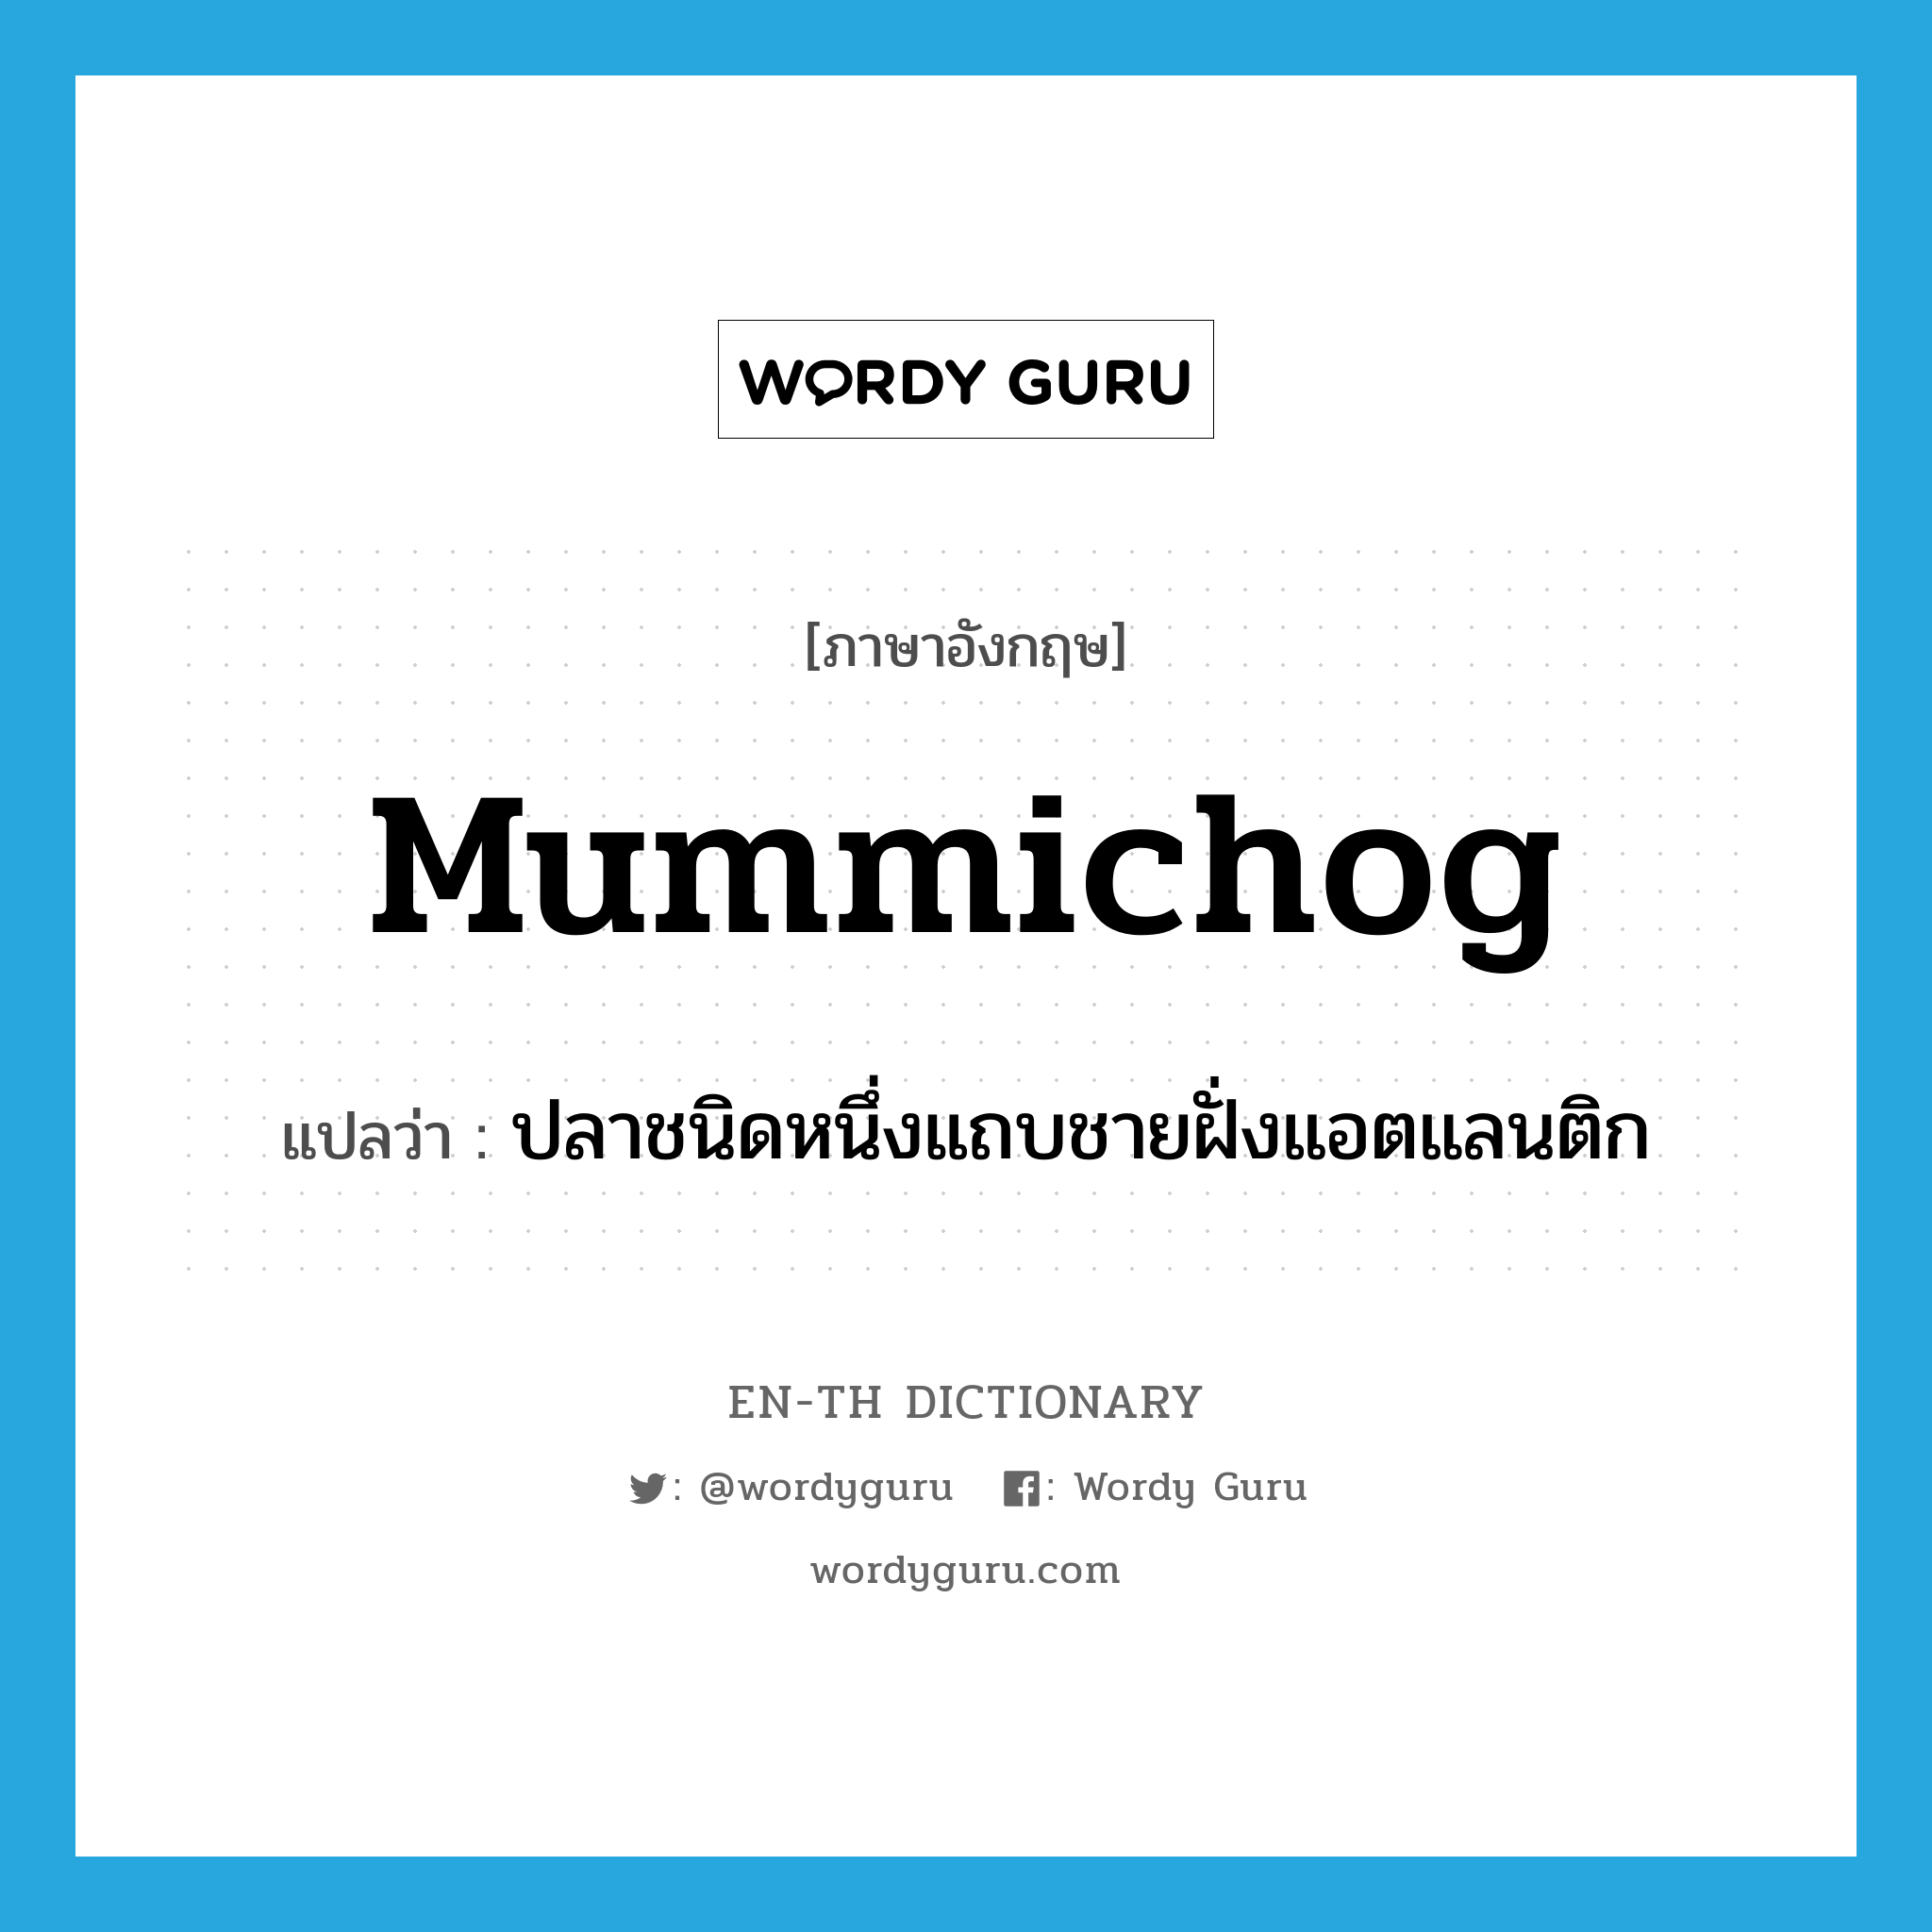 mummichog แปลว่า?, คำศัพท์ภาษาอังกฤษ mummichog แปลว่า ปลาชนิดหนึ่งแถบชายฝั่งแอตแลนติก ประเภท N หมวด N